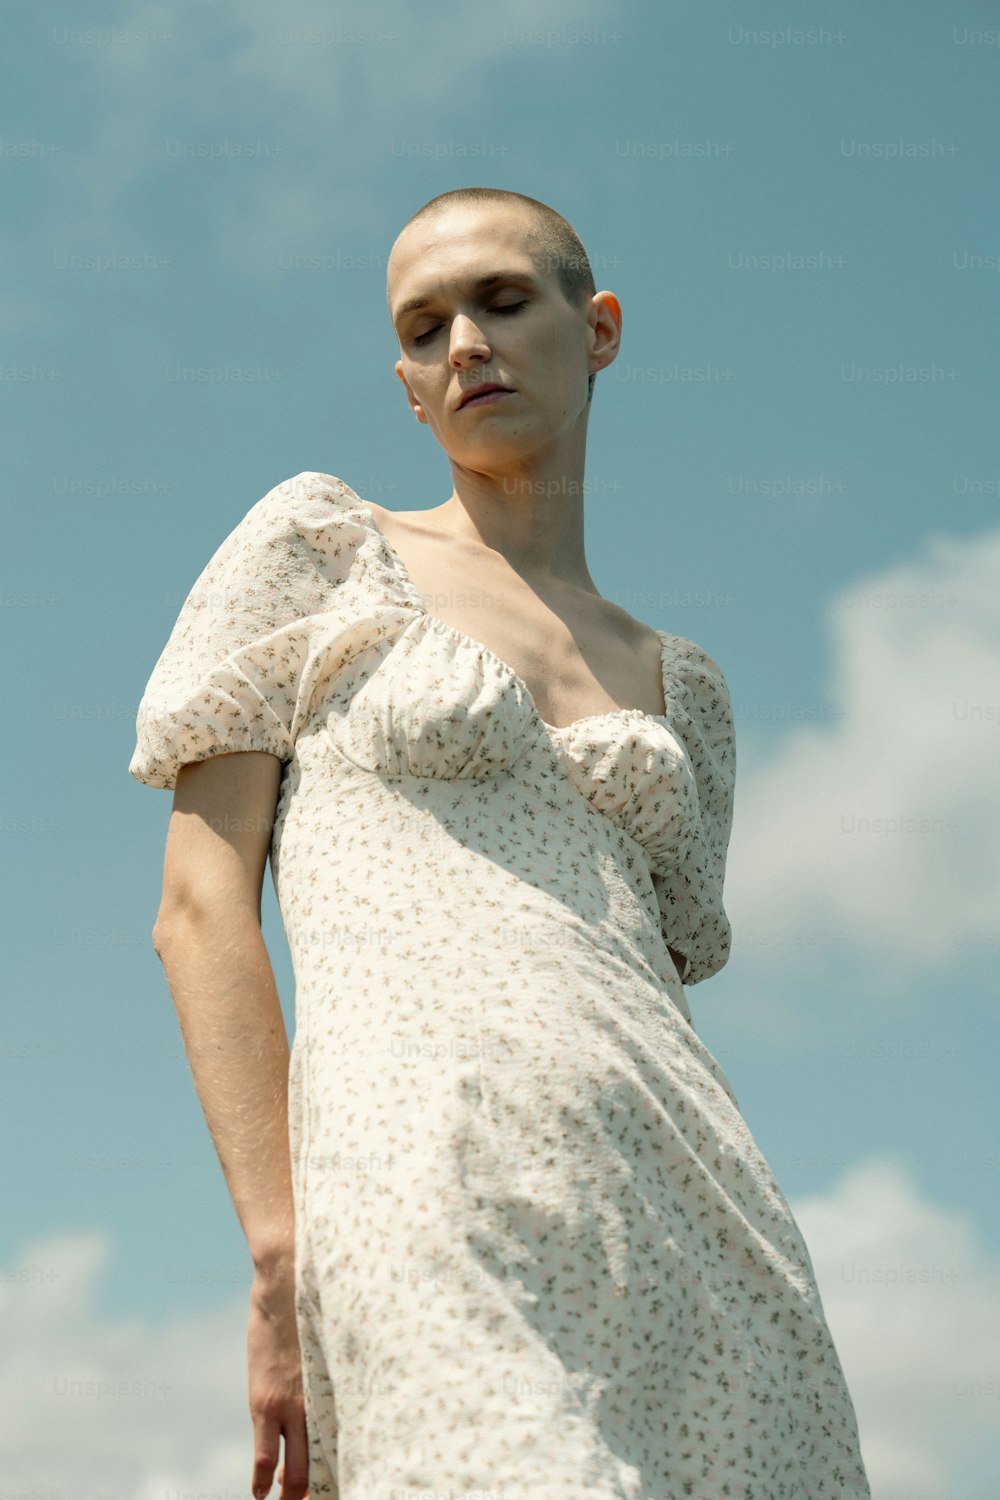 Una donna in un vestito bianco con una testa calva